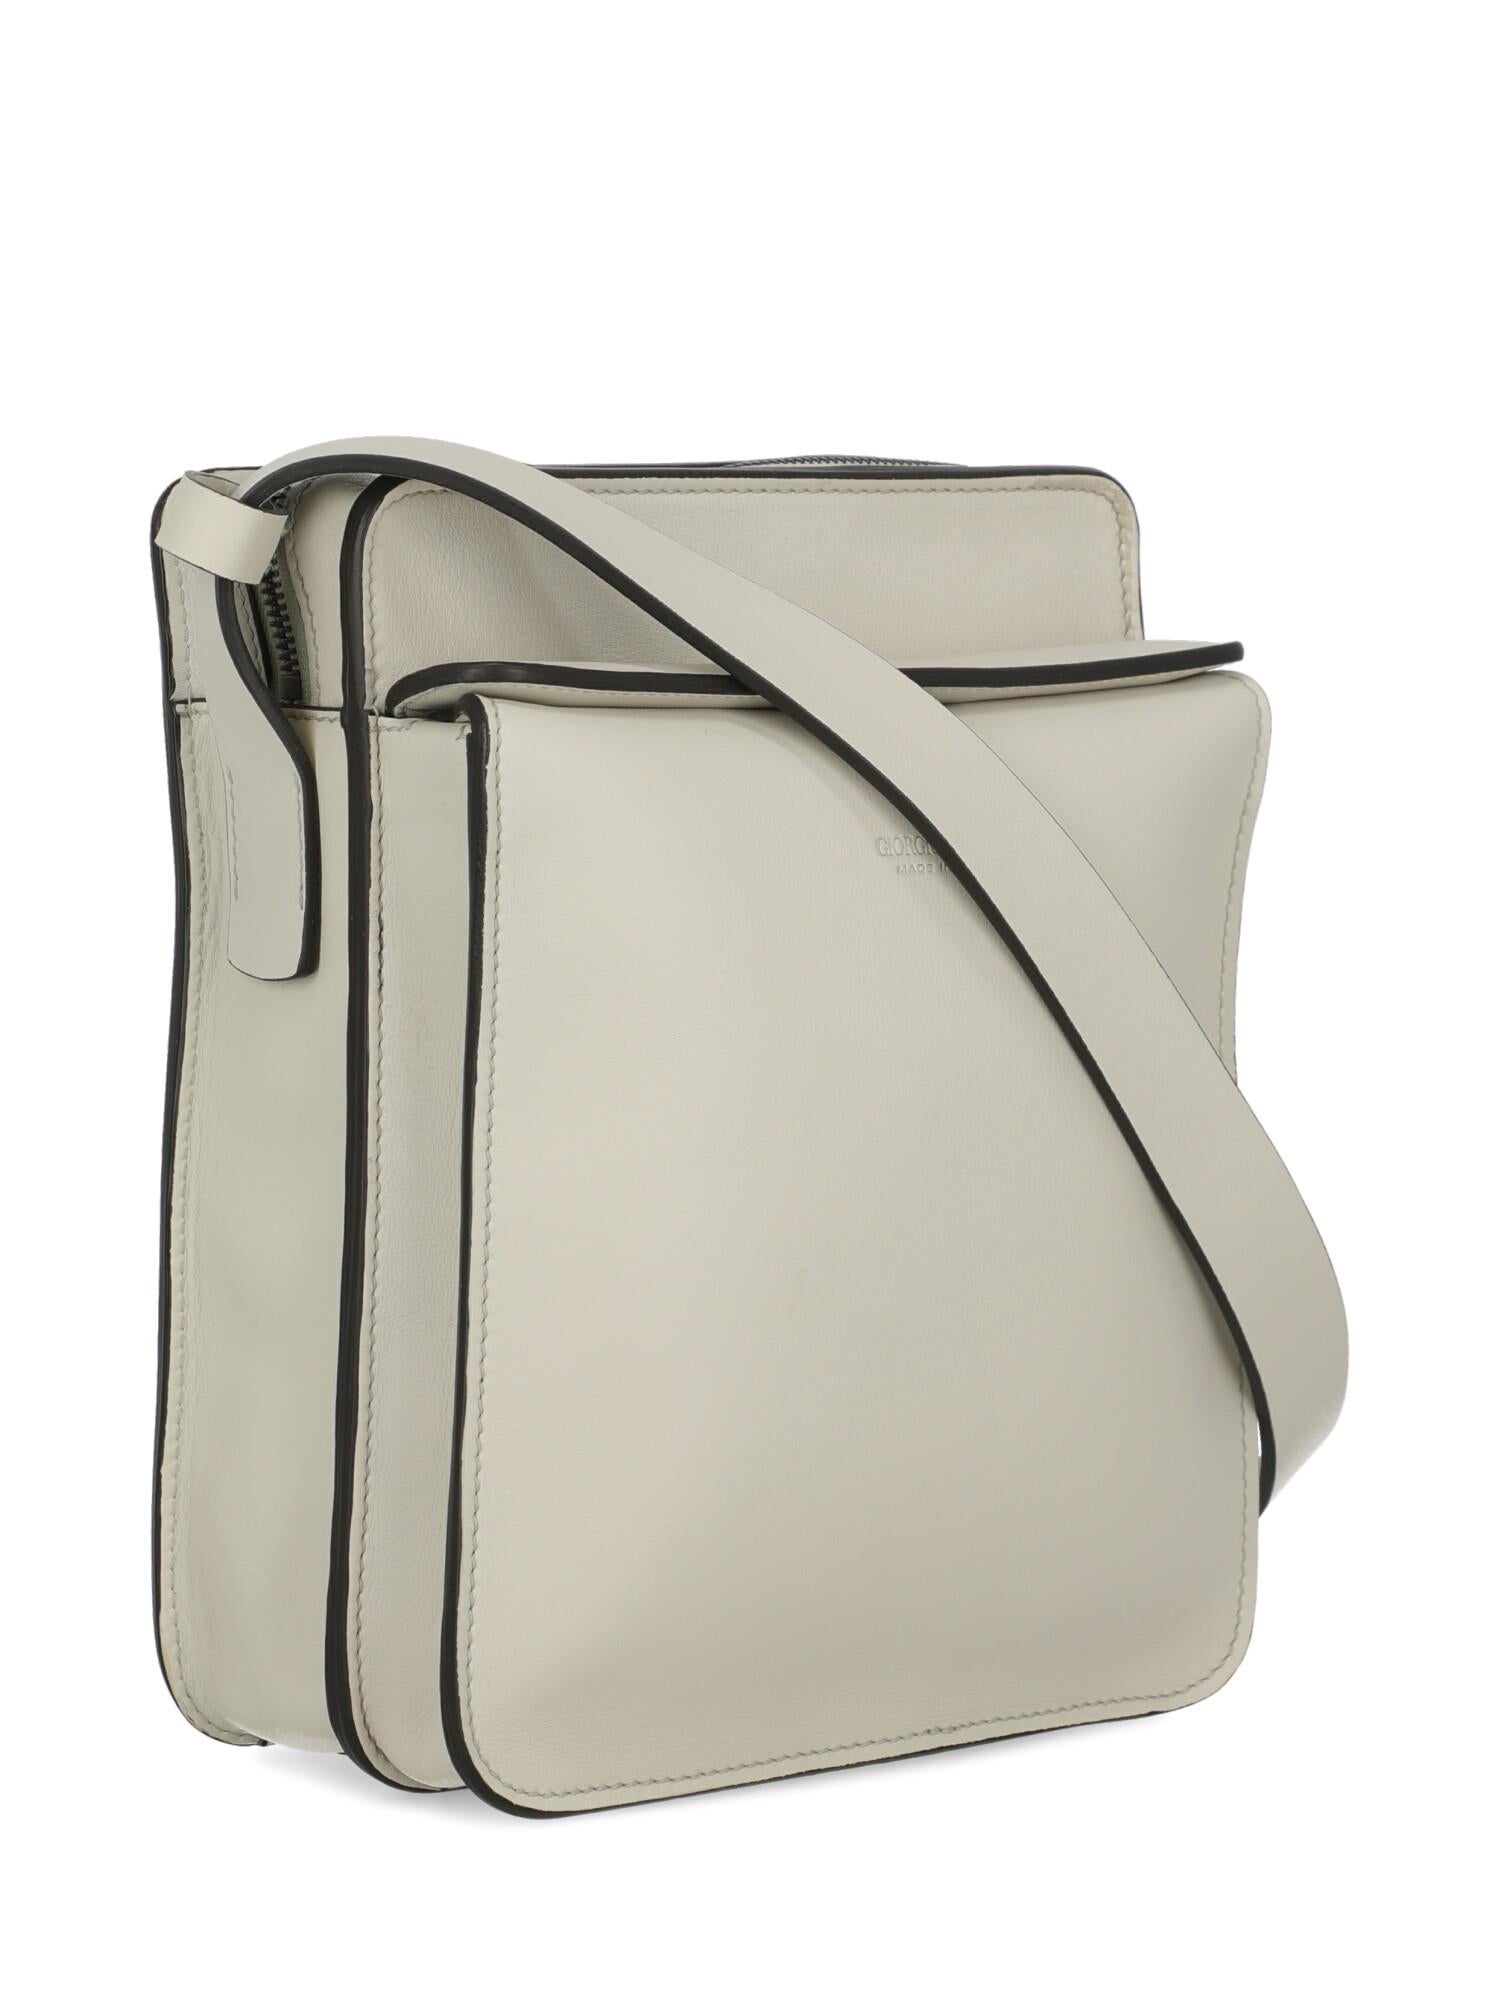 white leather messenger bag